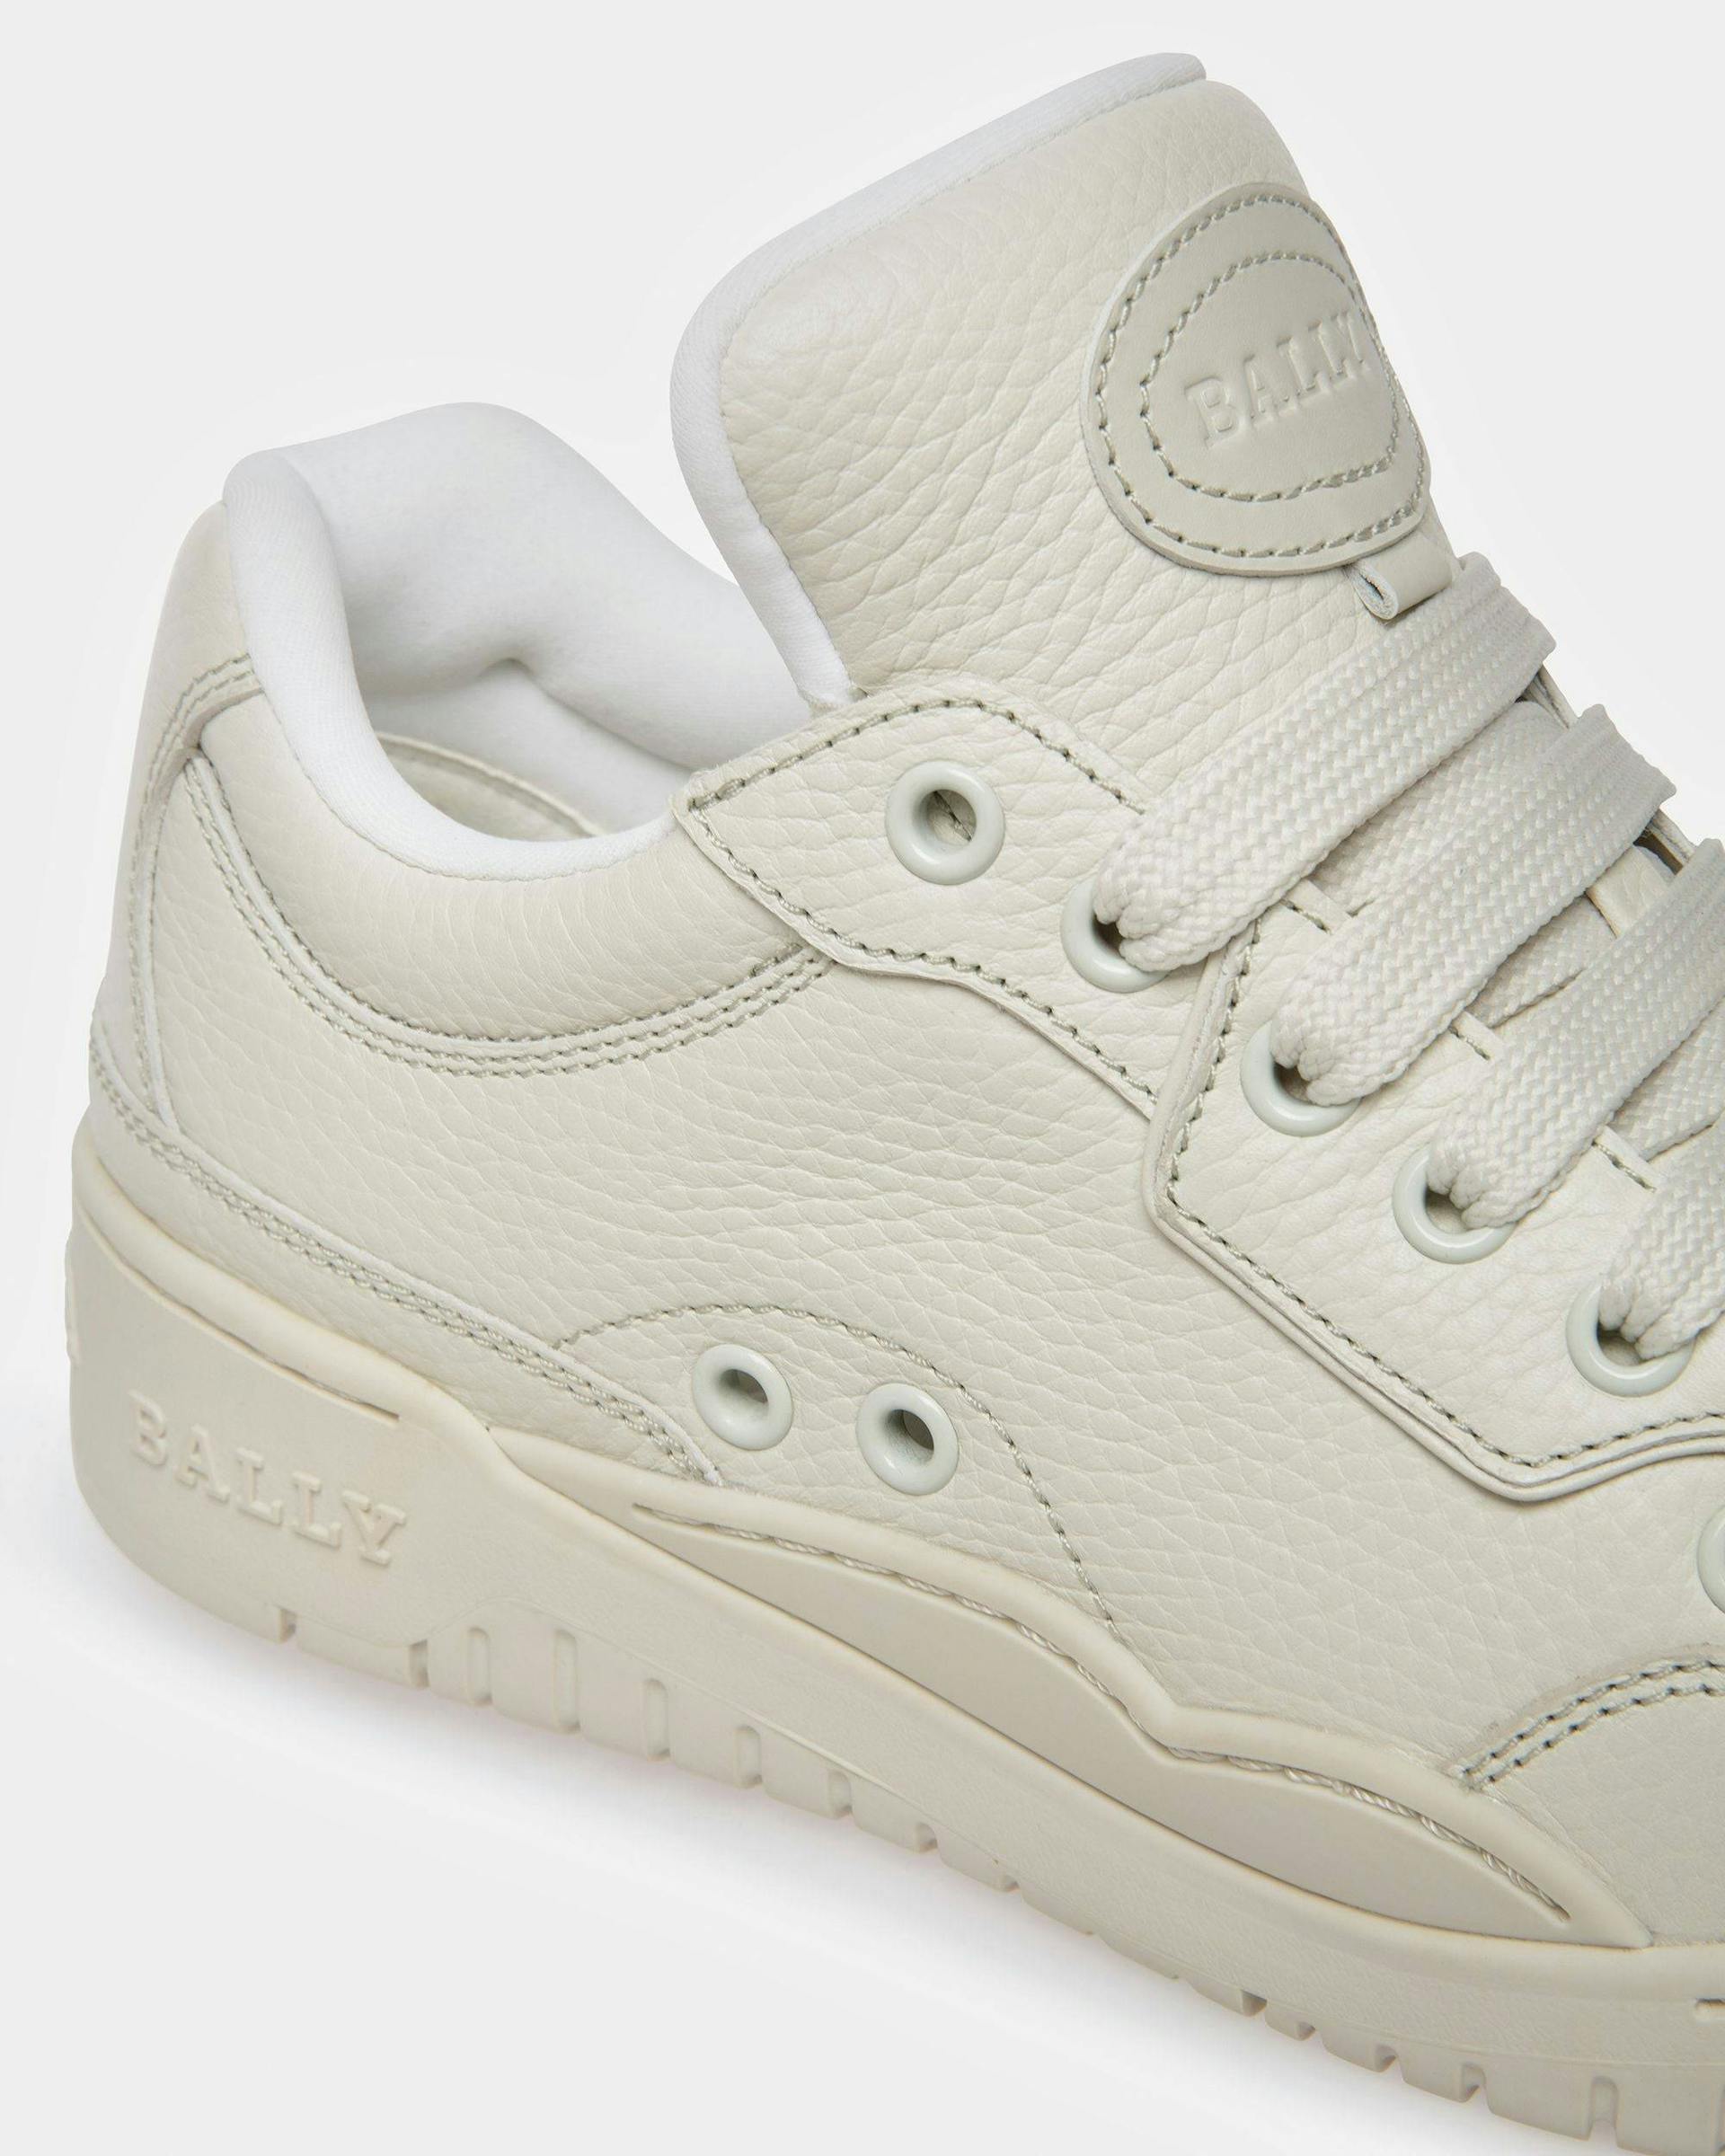 Kiro Leather Sneakers In Dusty White - Women's - Bally - 06